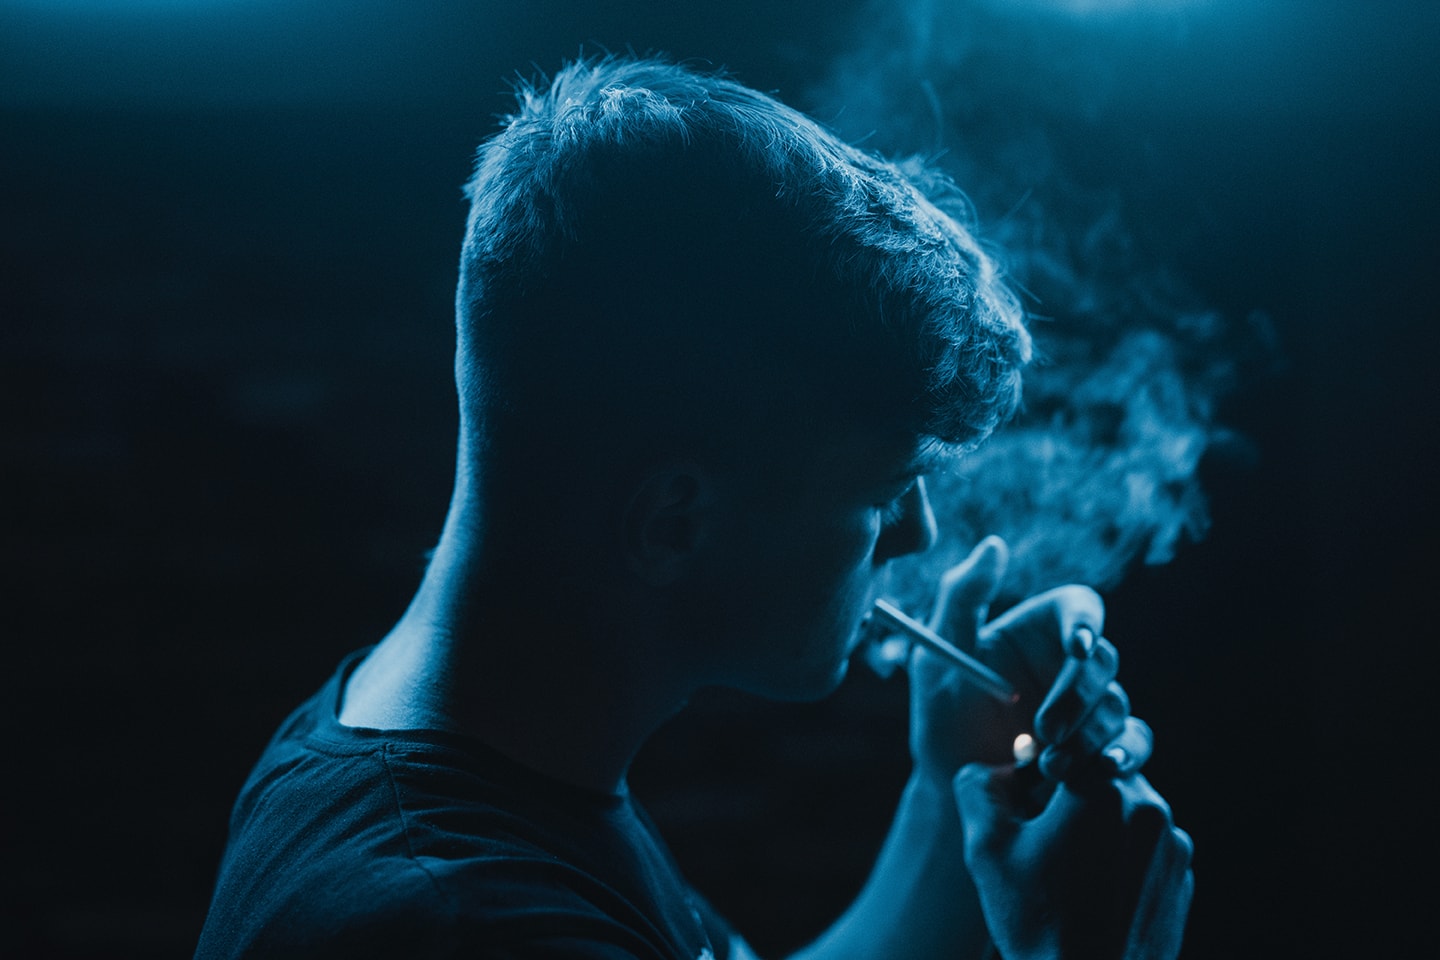 Teen Smoking a cigarette